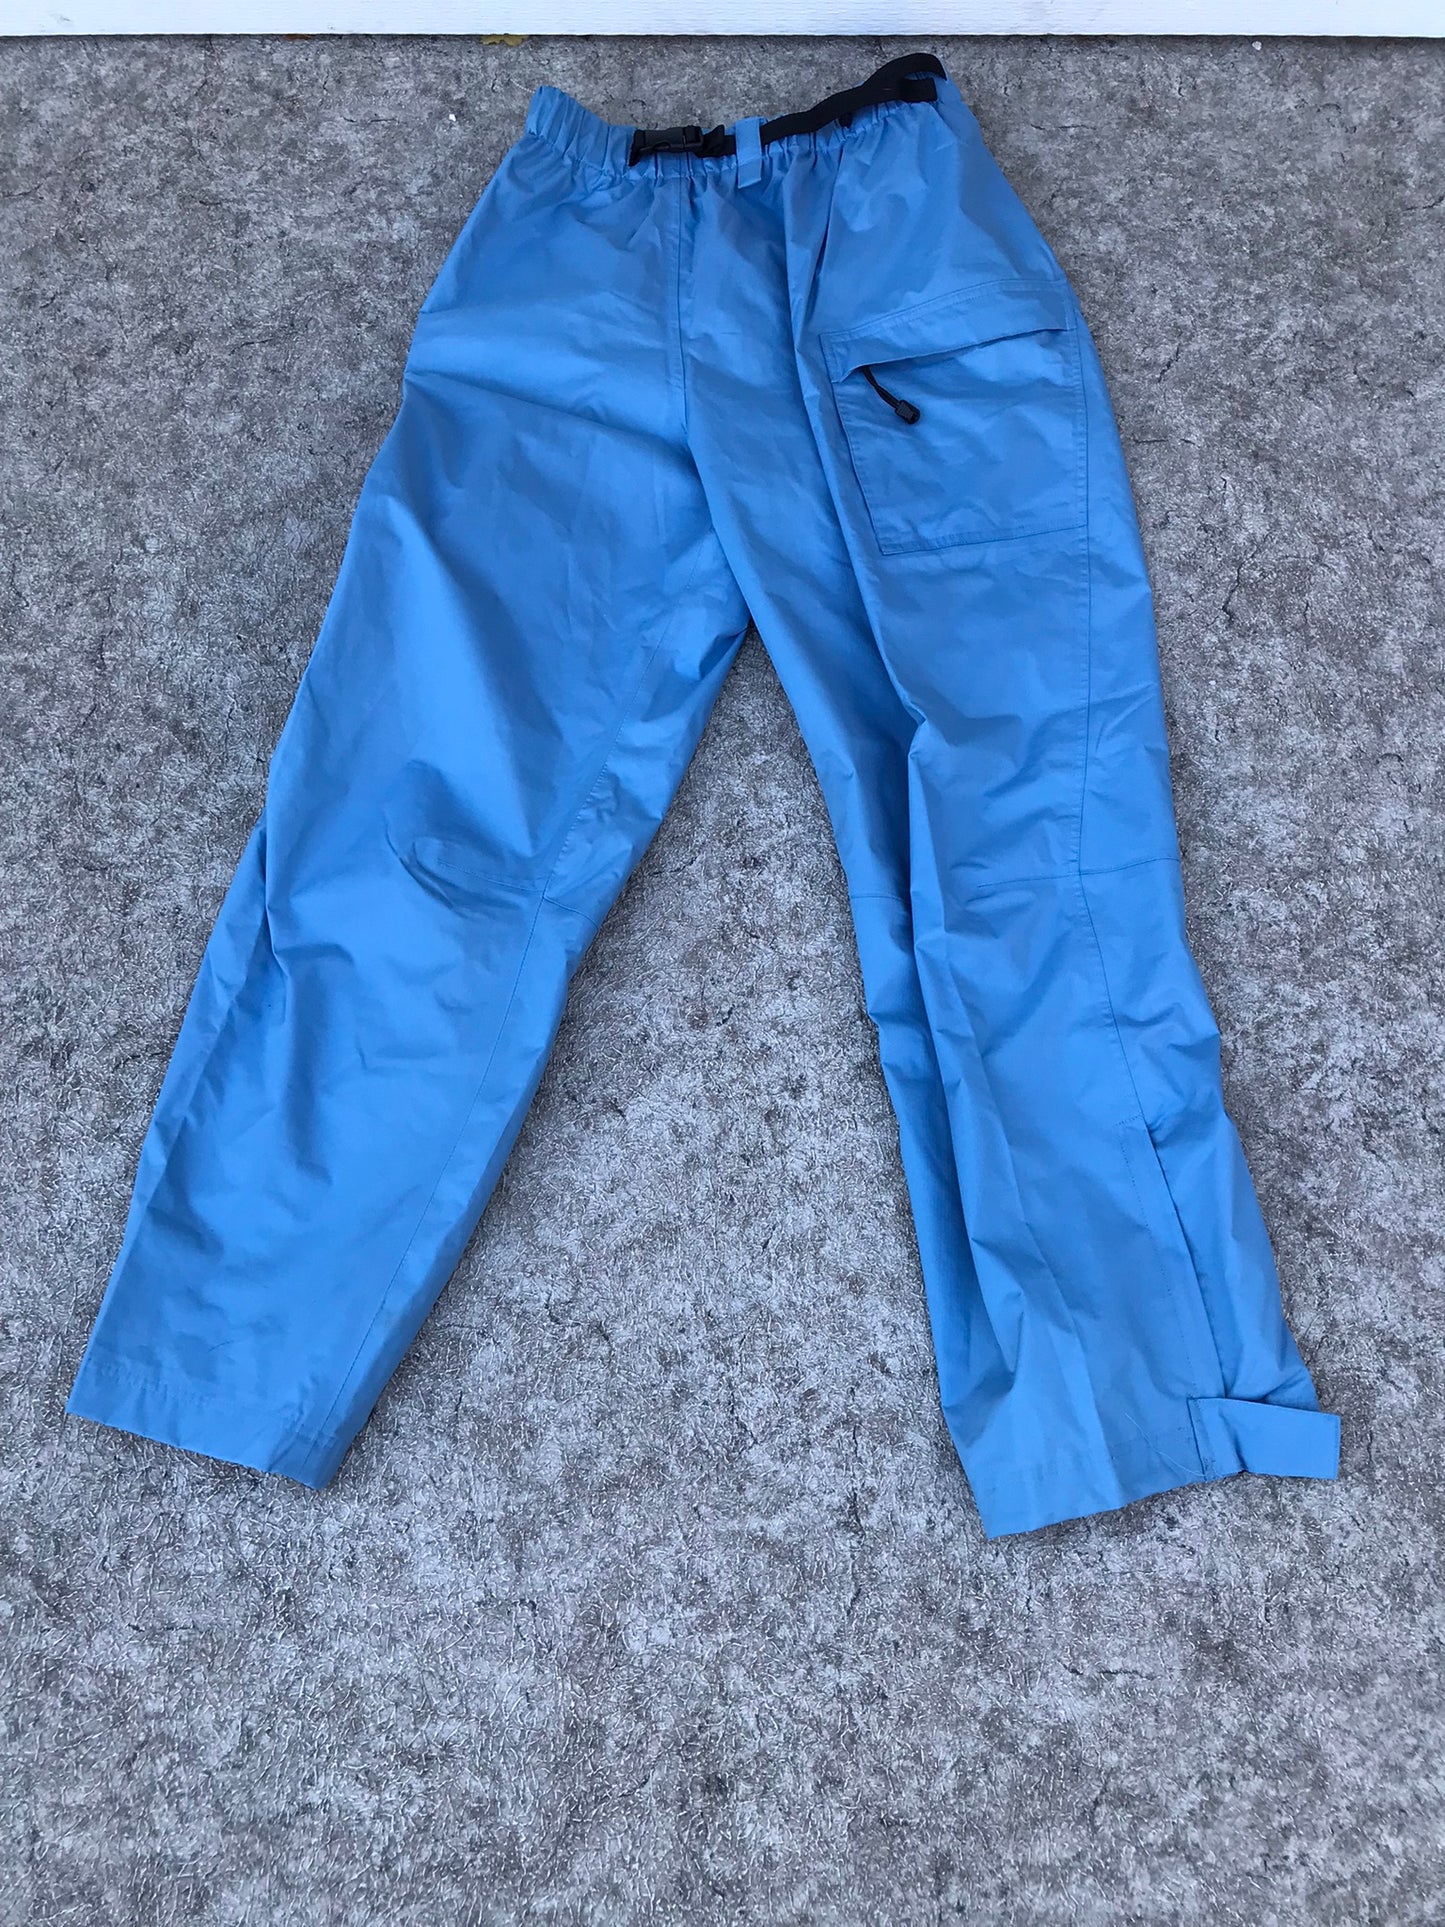 Rain Pants Ladies Size X Large Wetskins Aqua Blue Excellent